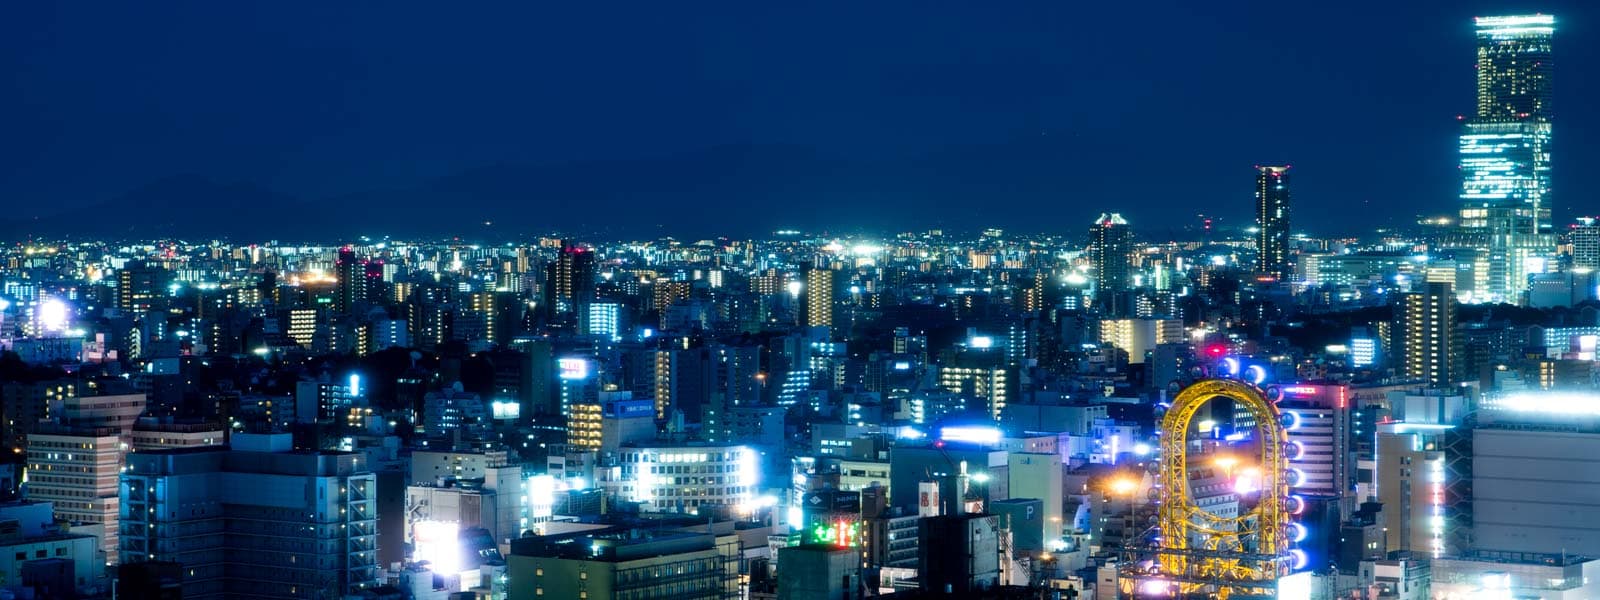 バーラウンジ「スカイクルーザー」から眺める大阪ミナミや「あべのハルカス」などの美しい夜景